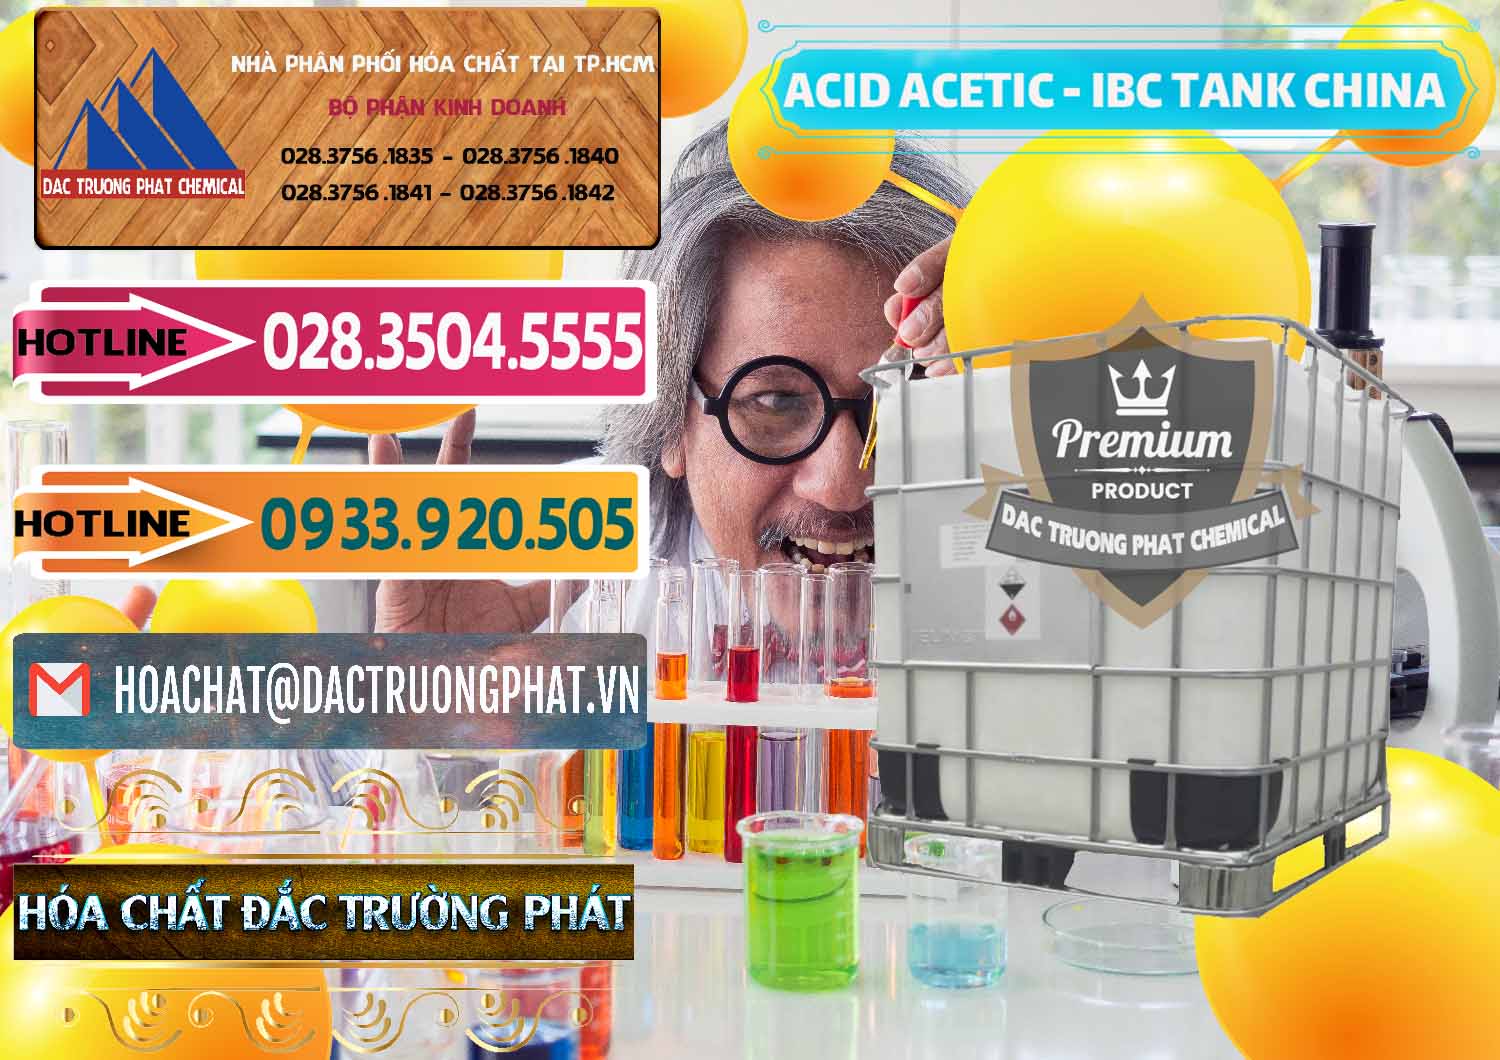 Cty cung cấp ( bán ) Acetic Acid – Axit Acetic Tank Bồn IBC Trung Quốc China - 0443 - Cty phân phối và cung ứng hóa chất tại TP.HCM - dactruongphat.vn